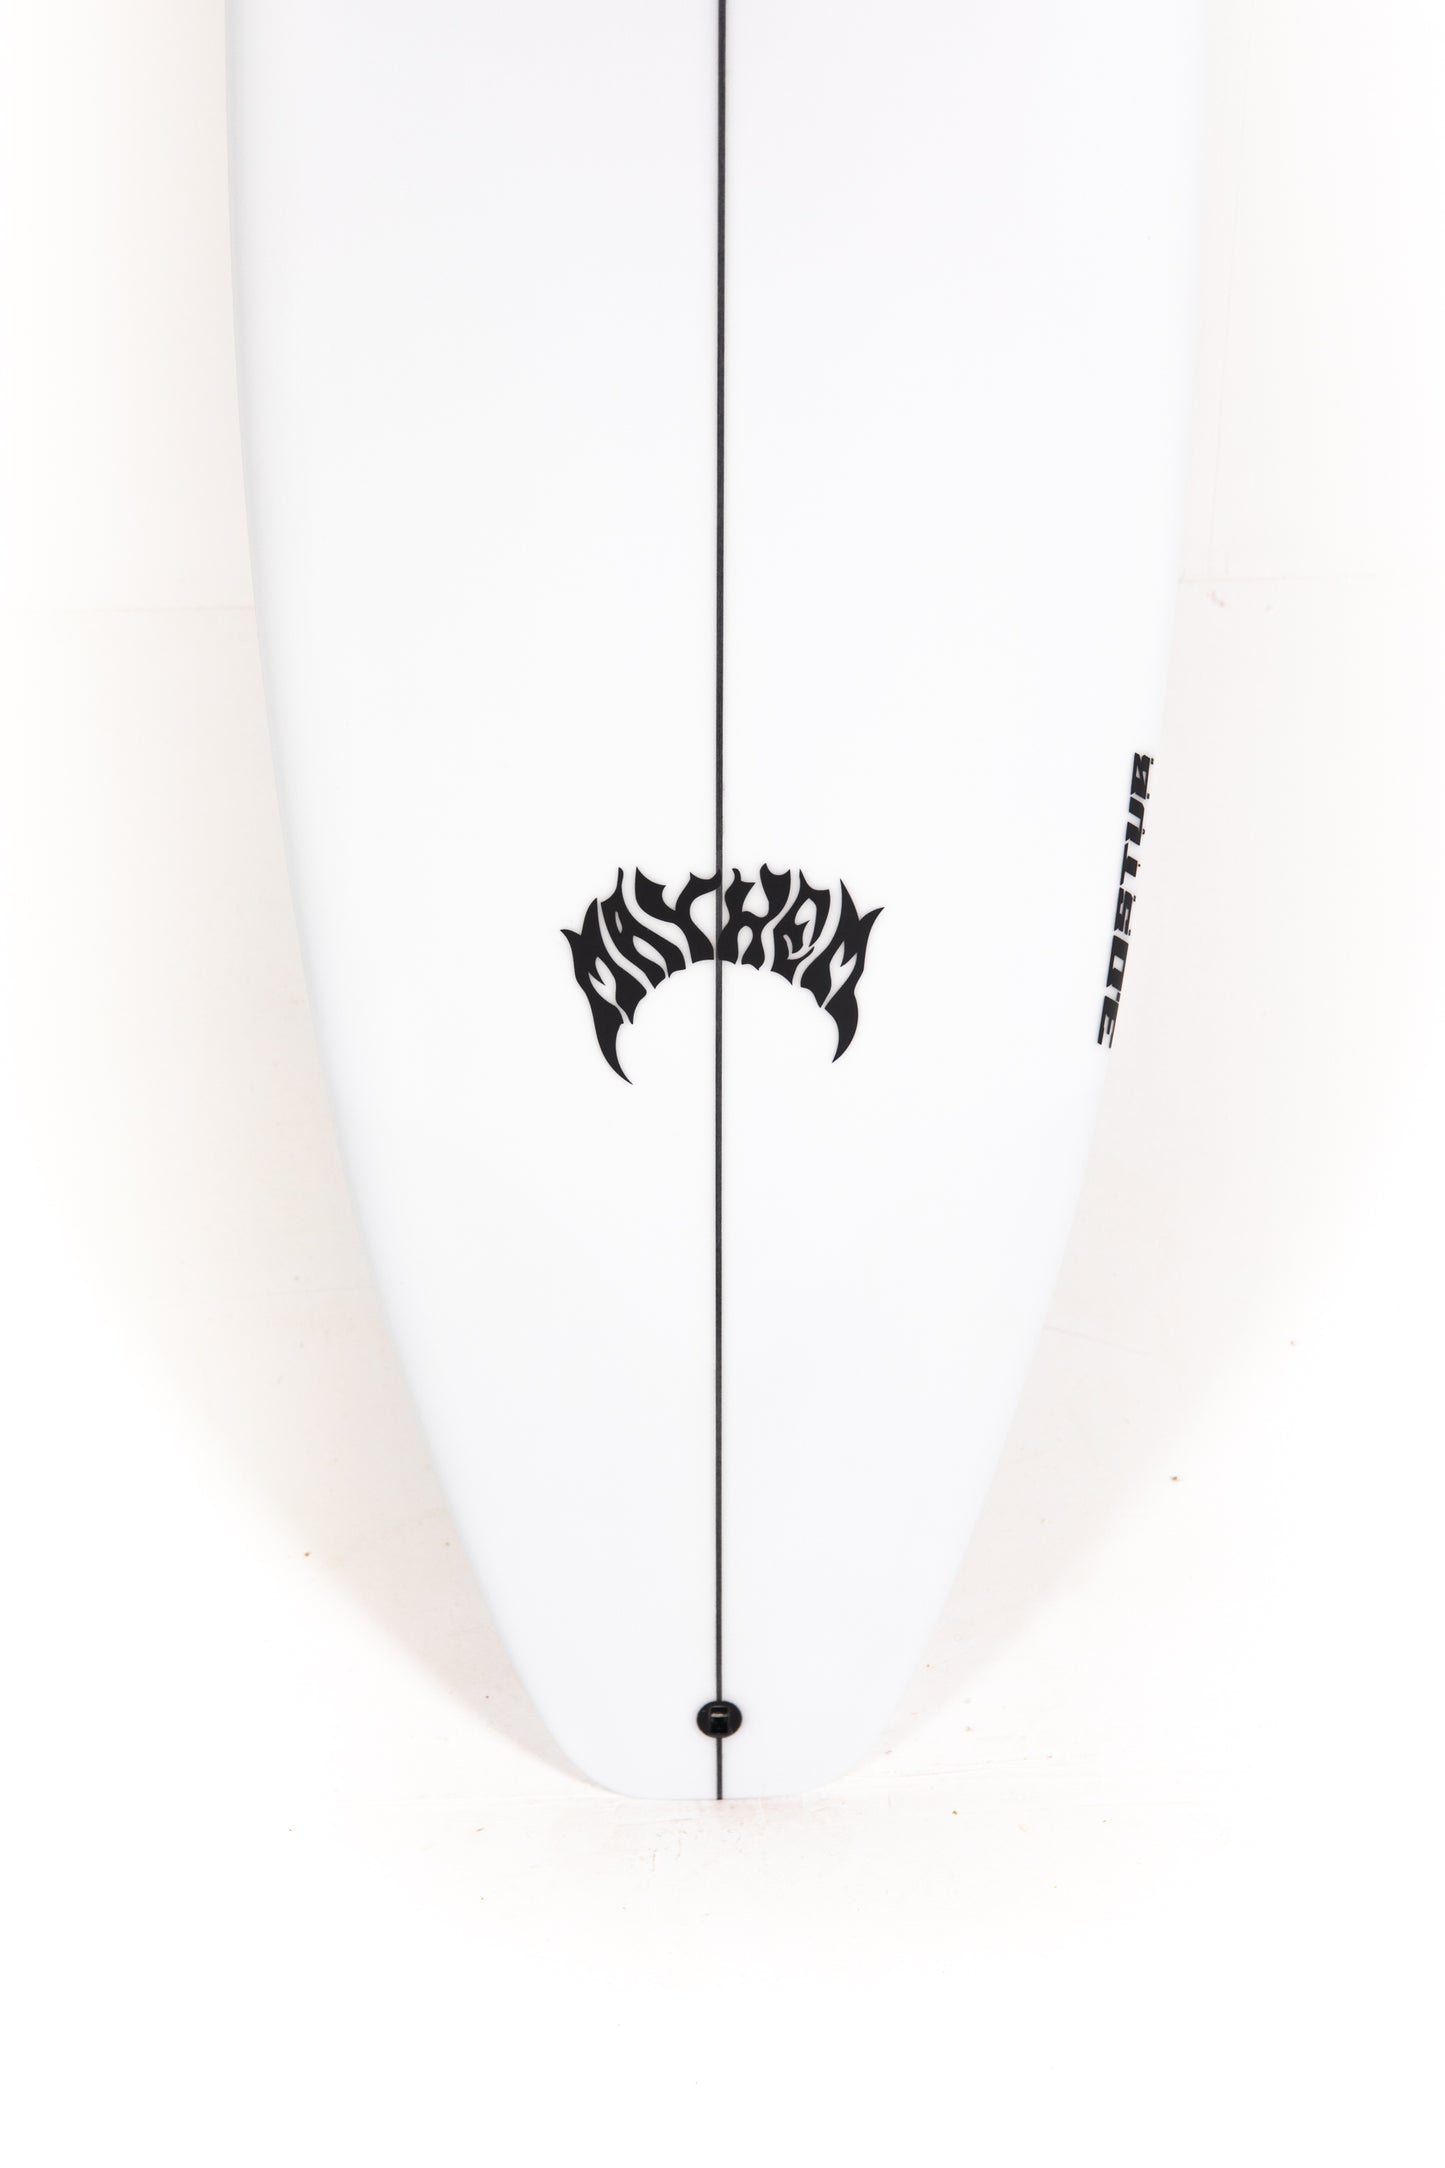 
                  
                    Pukas-Surf-Shop-Lost-Surfboards-3-0-stub-driver_Matt-Biolos-5_10
                  
                